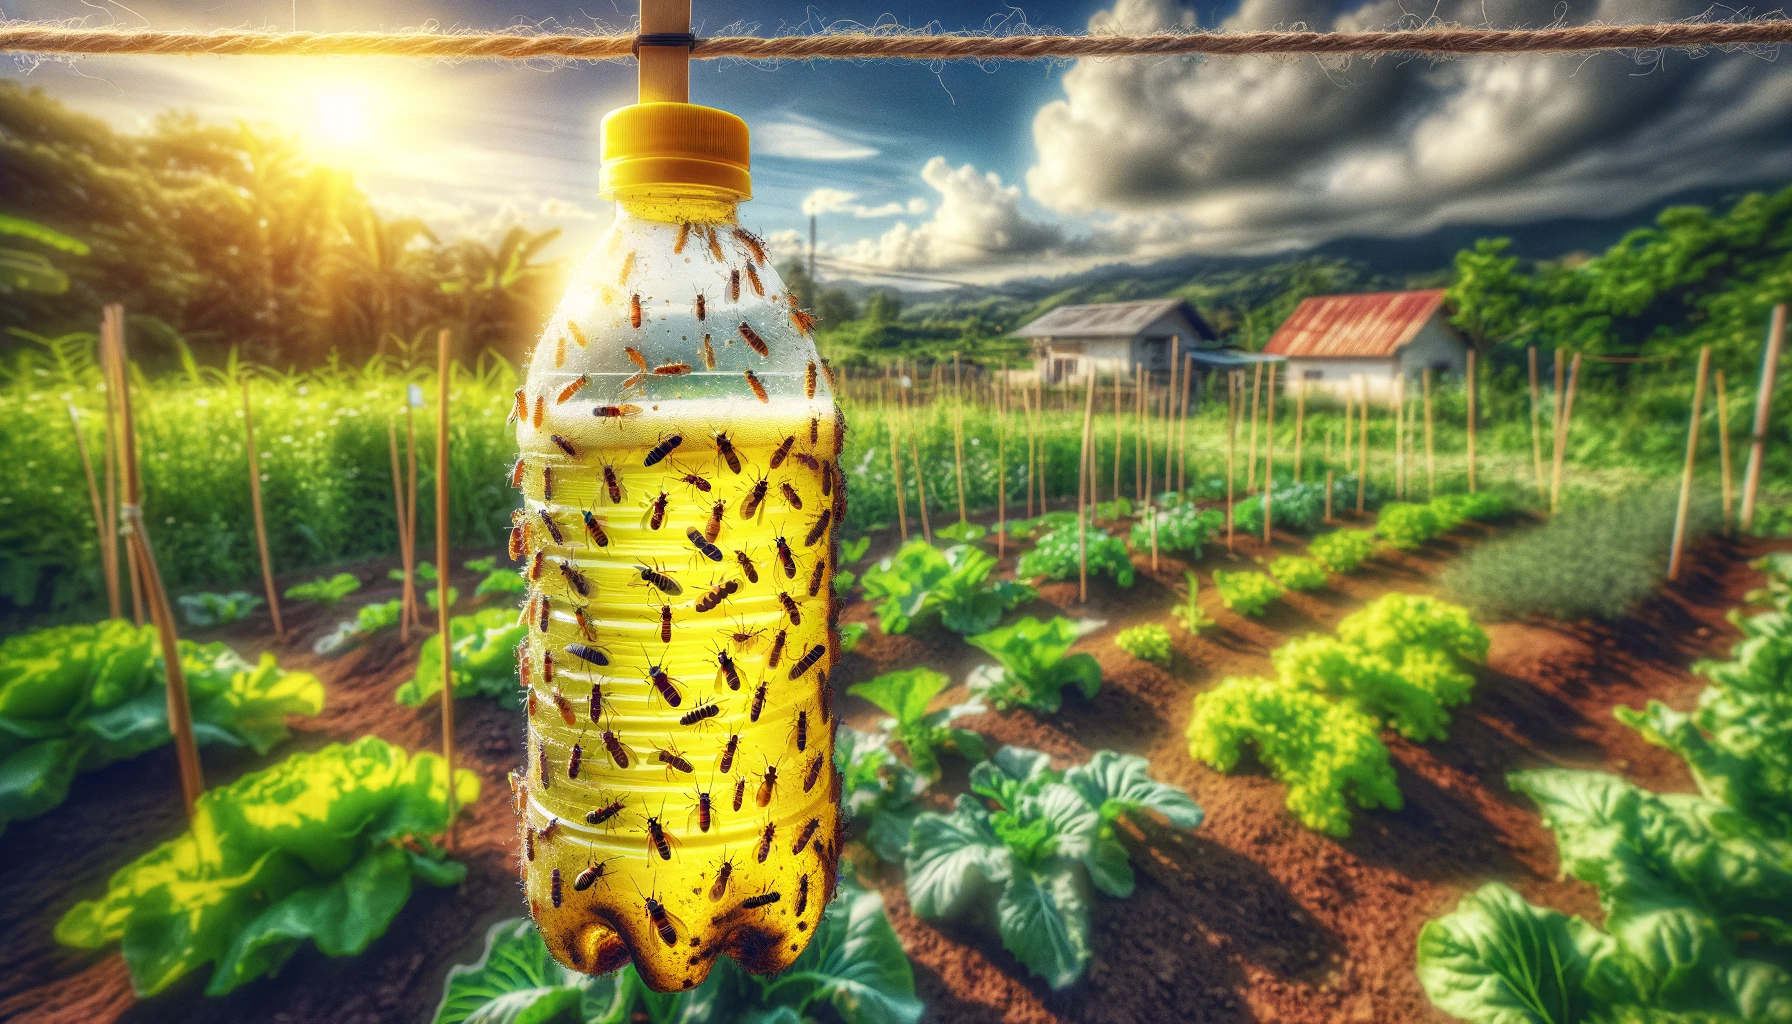 Fly trap bottle in sunny vegetable garden.